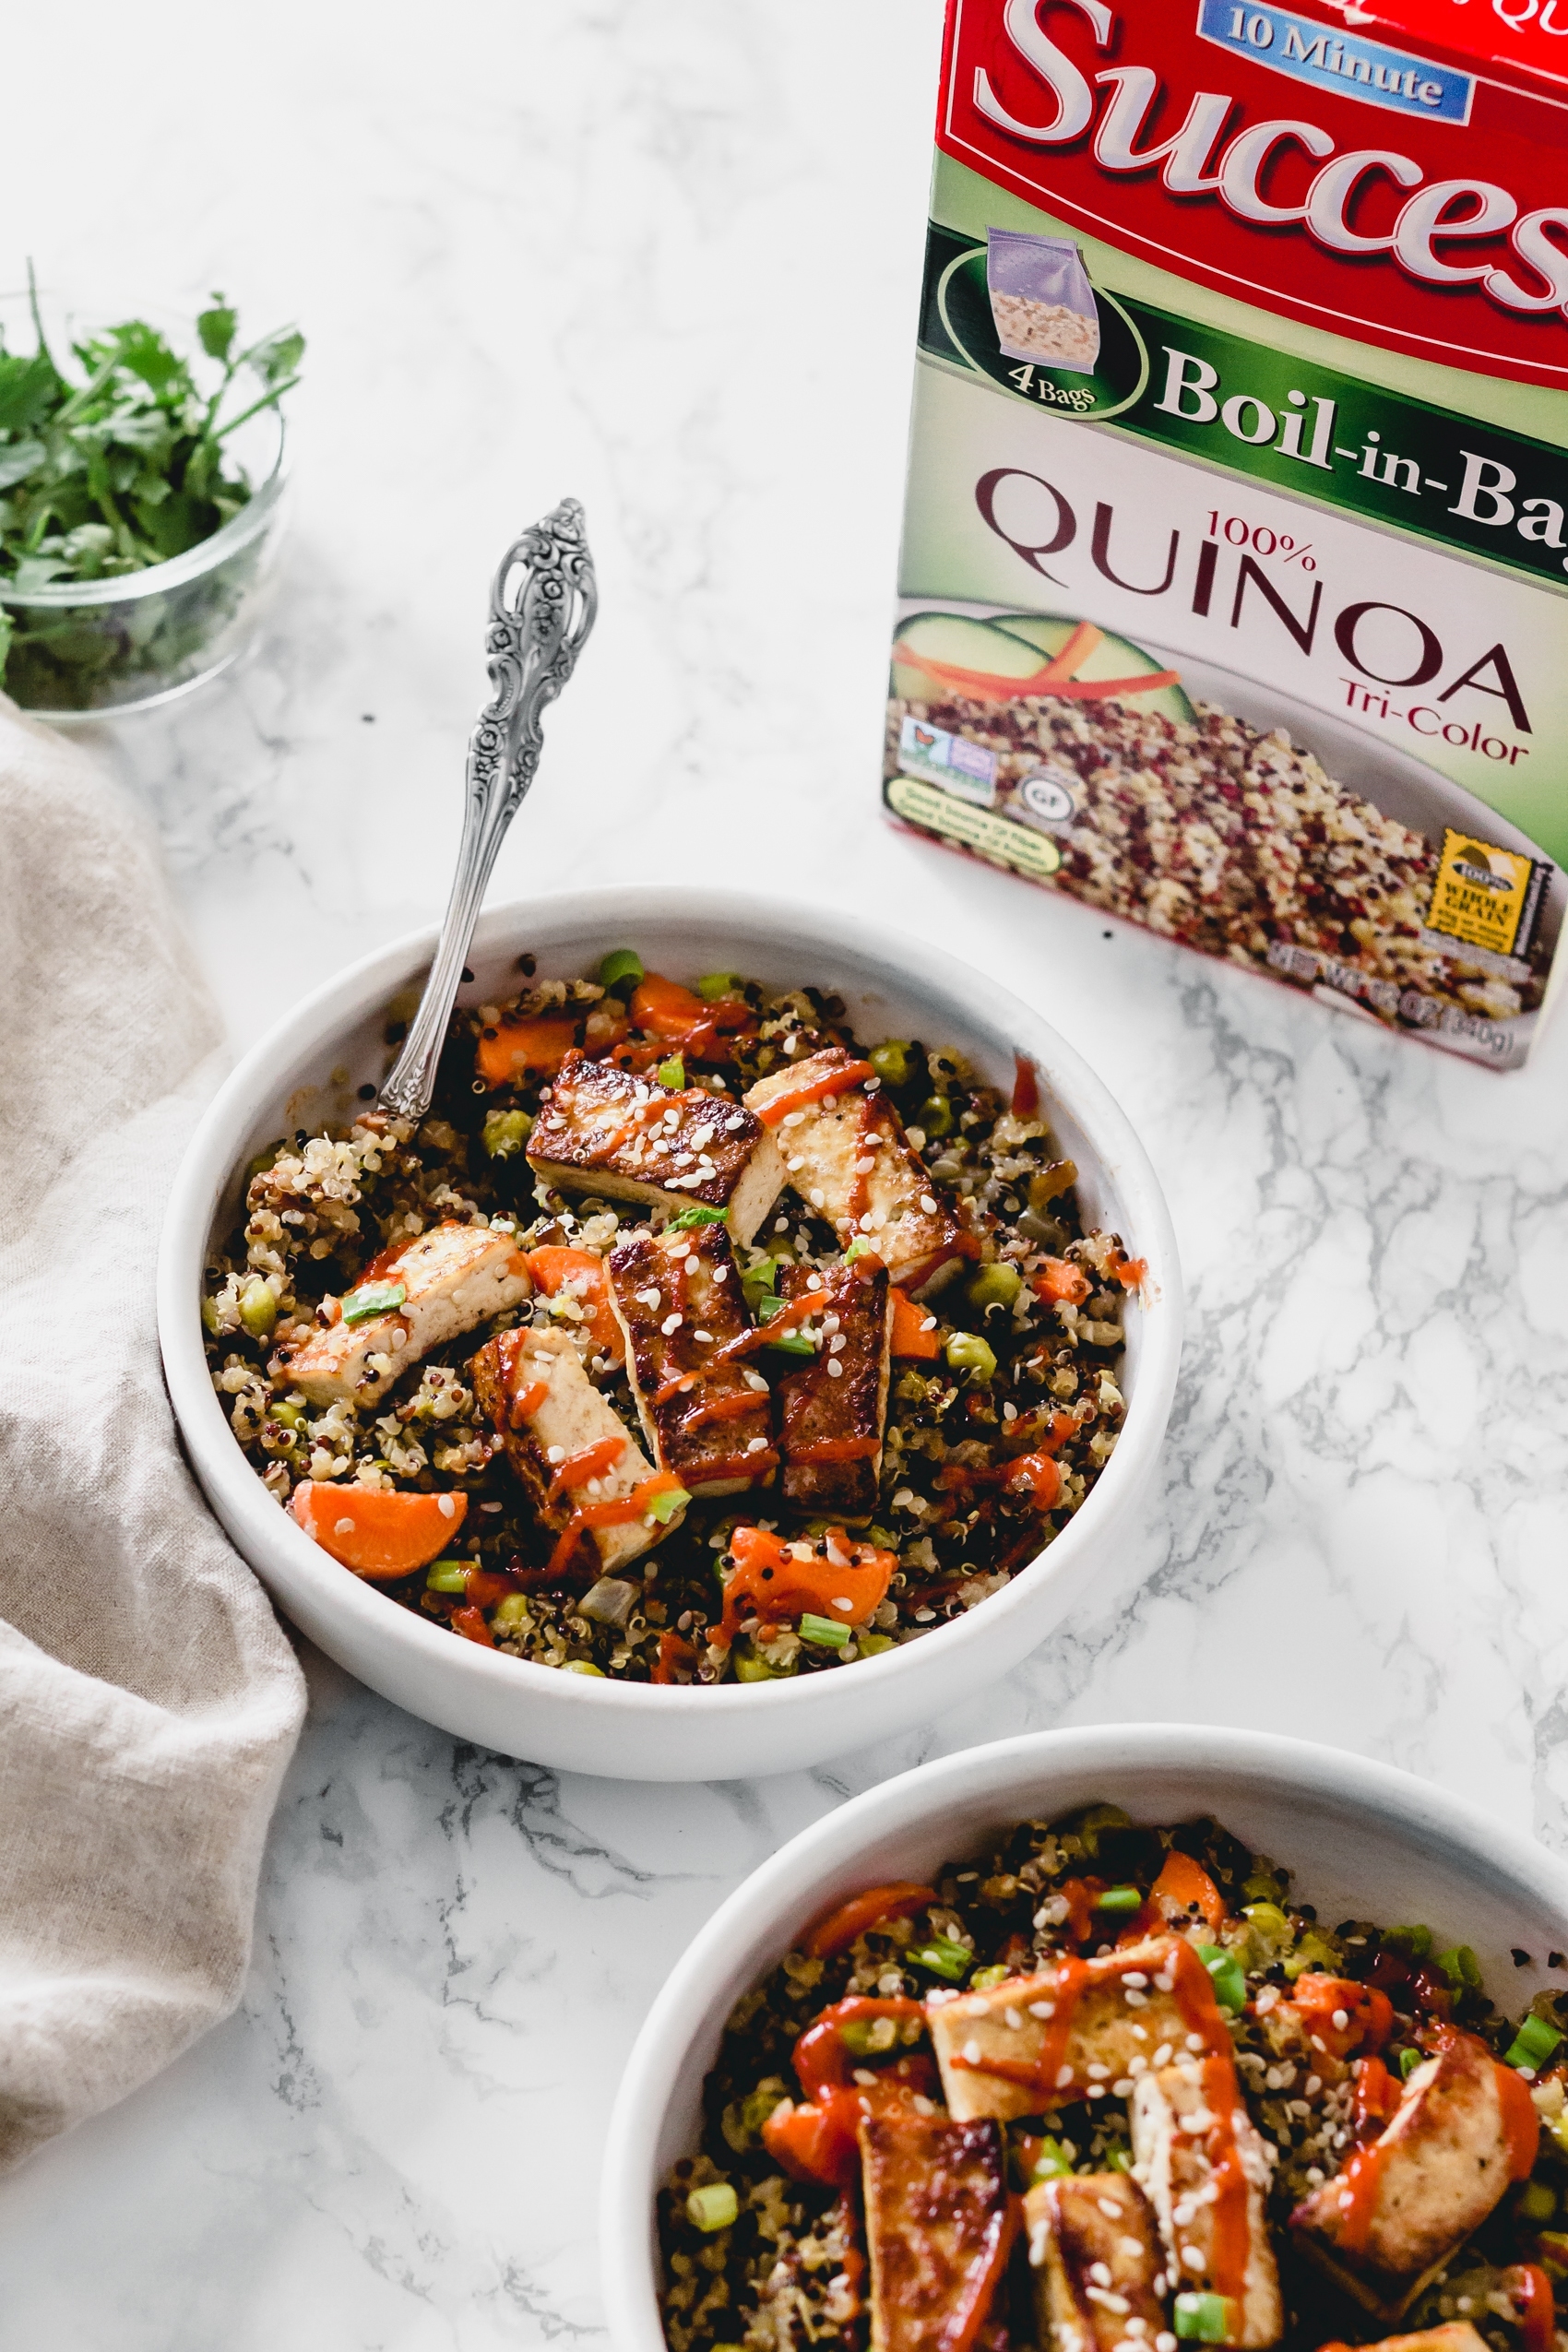 a box of tricolor quinoa next to a bowl of stir fried tofu and quinoa